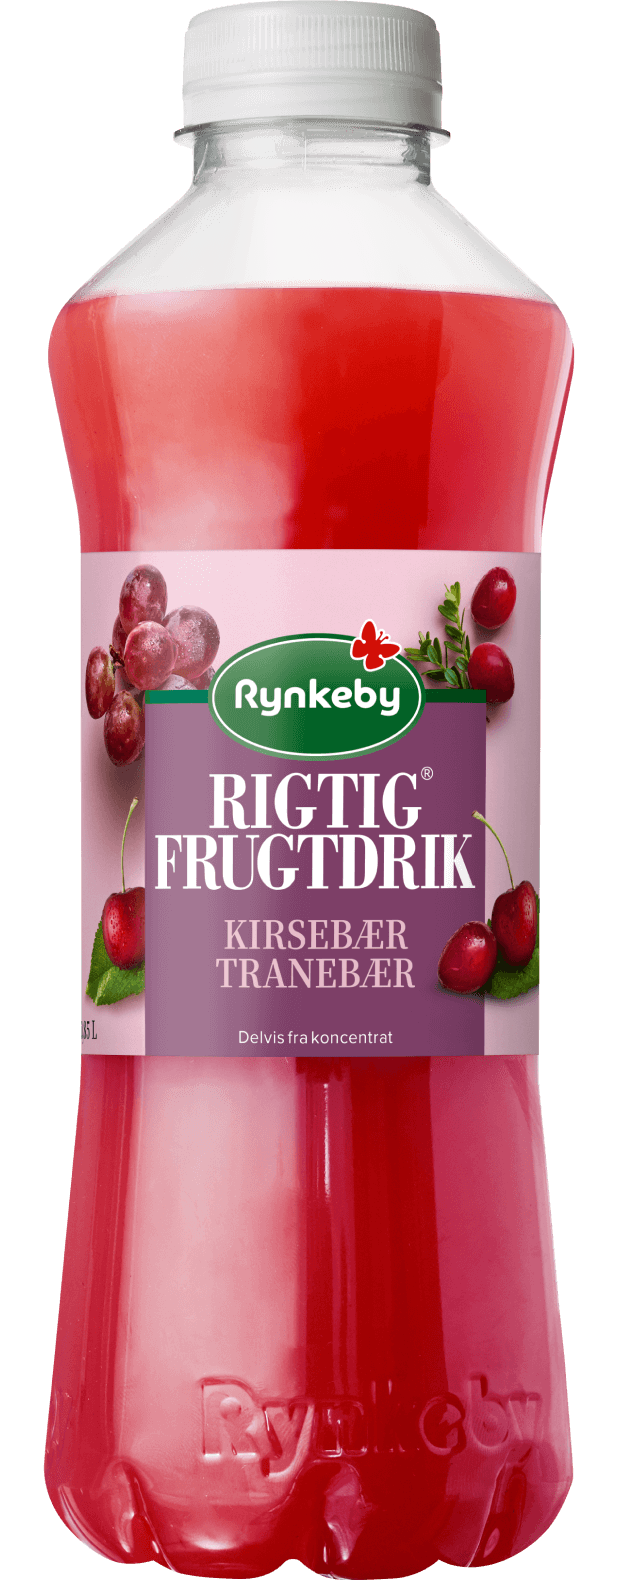 Rigtig® Frugtdrik Kirsebær-Tranebær